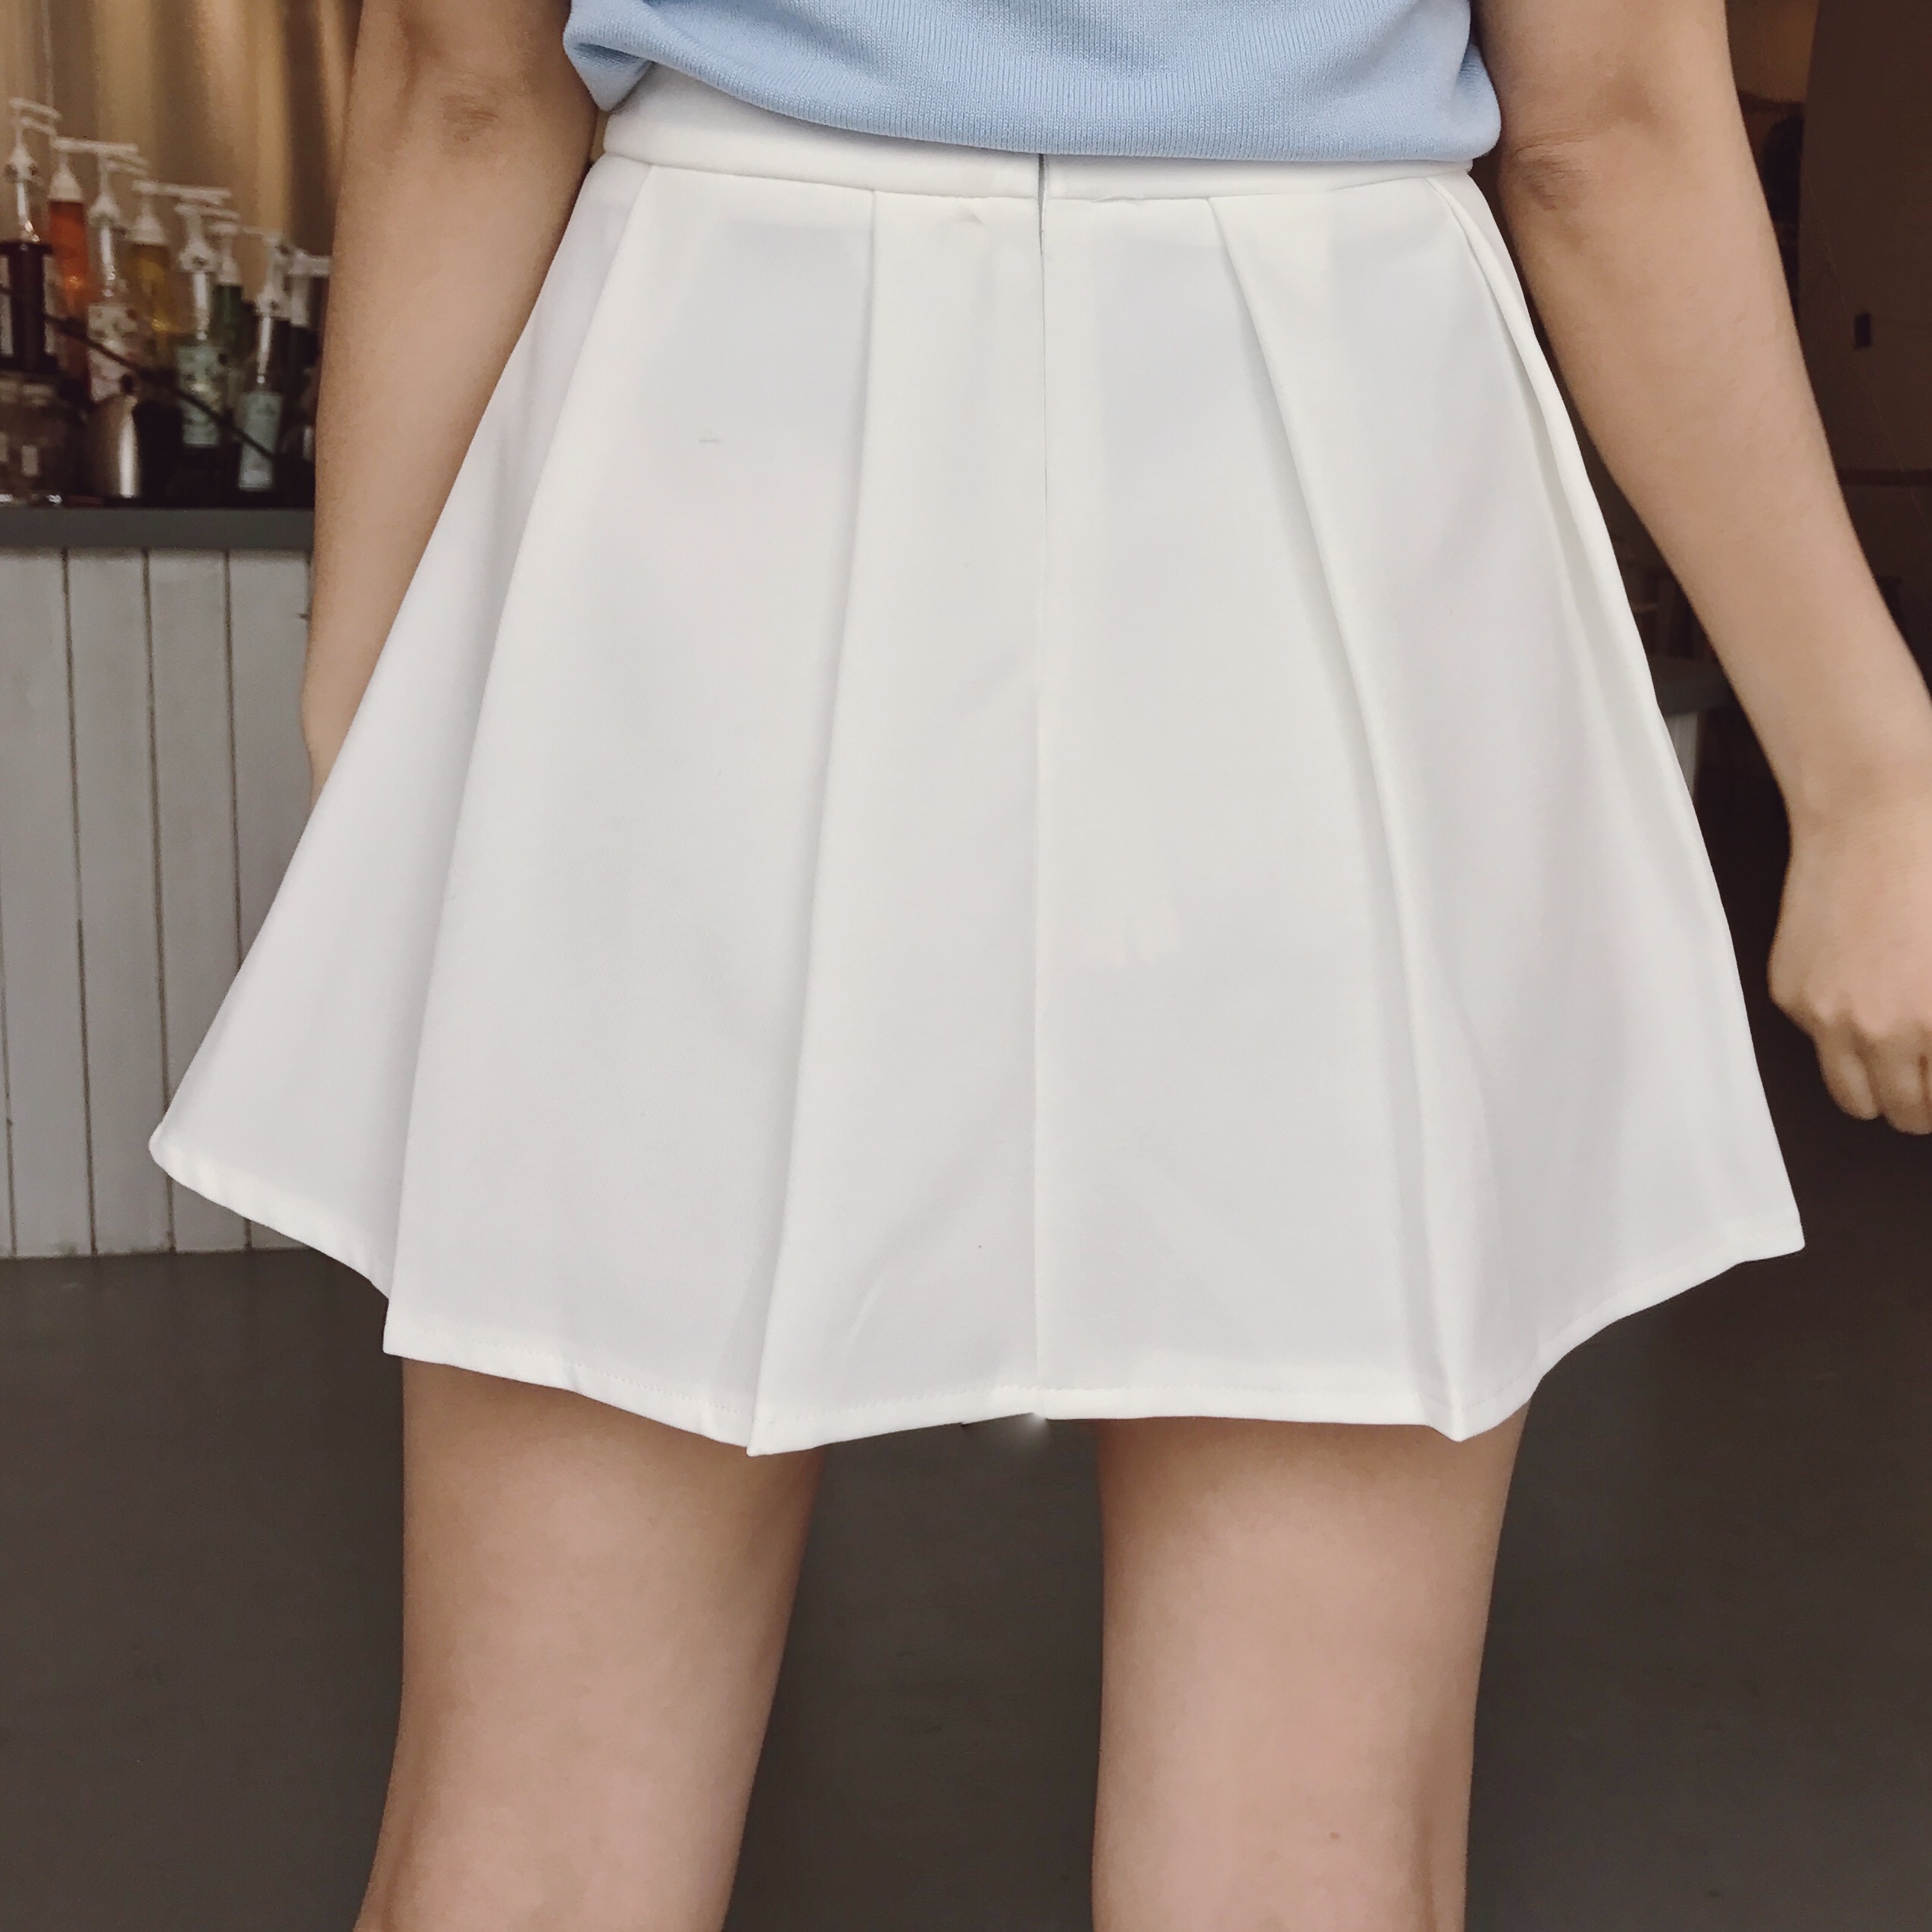 Lovely Triple Heart Tennis Skirt, Summer Short Skirts, Teen Skirts on ...